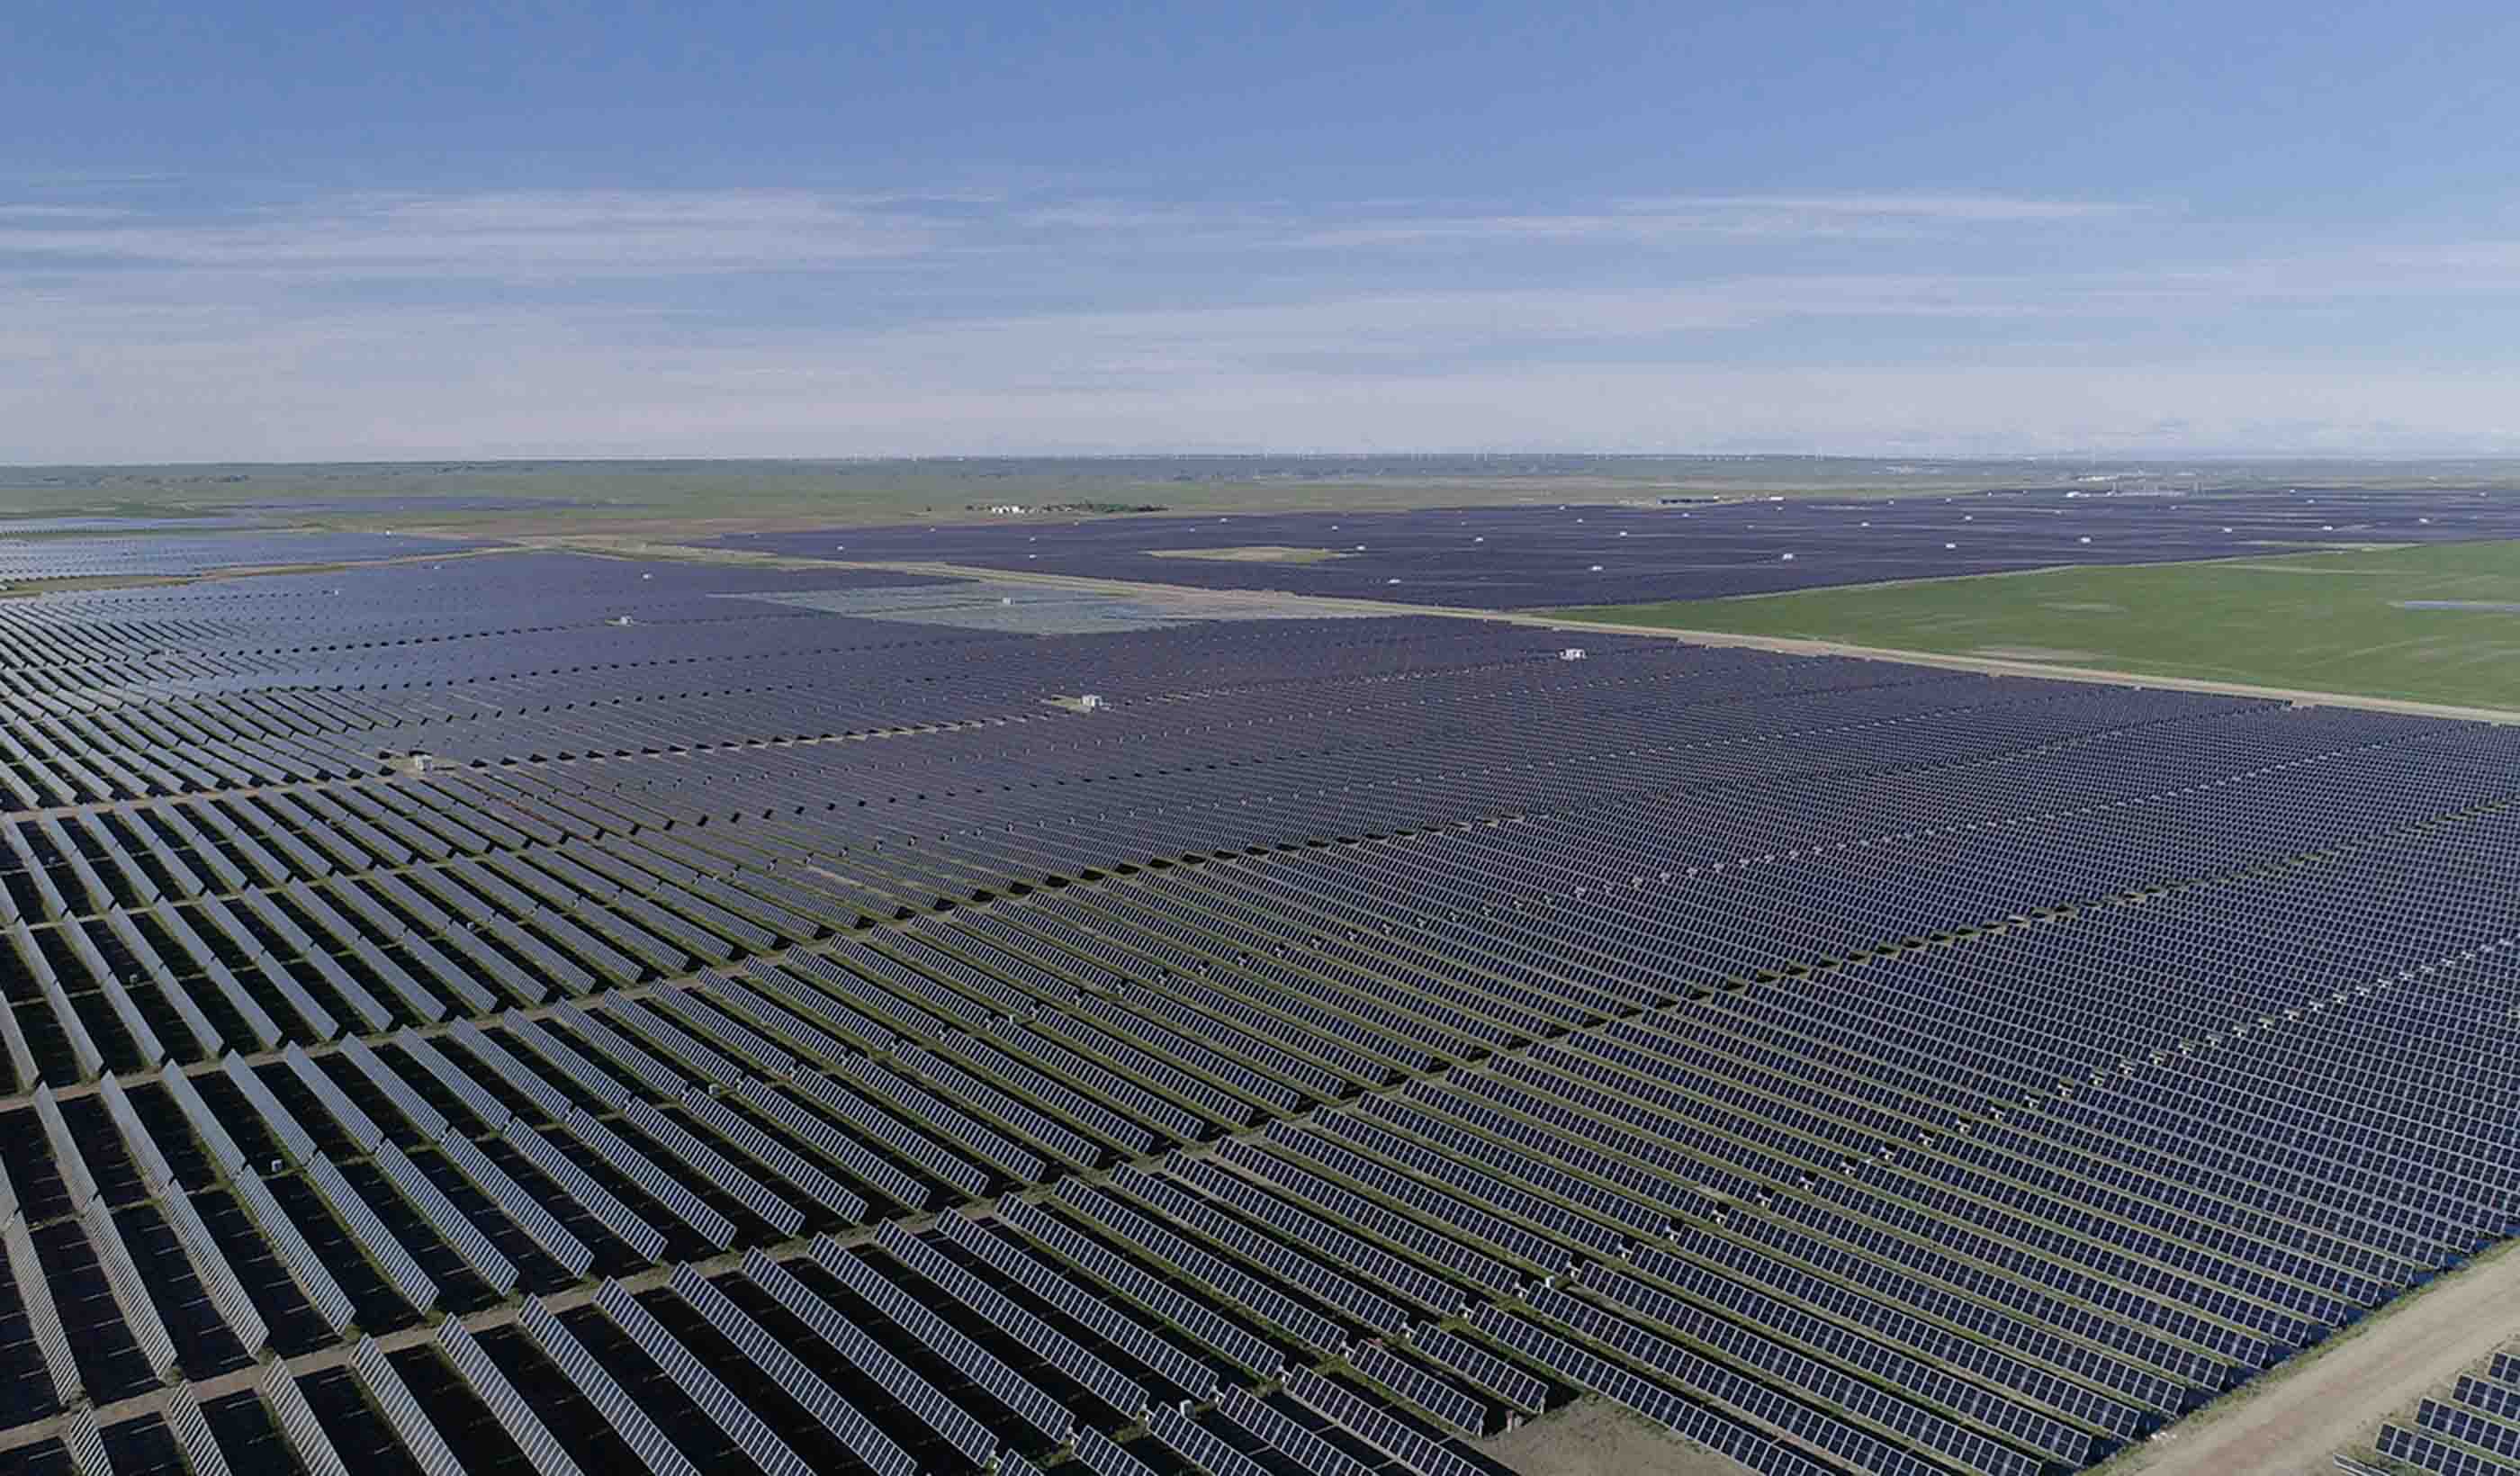 Designing Canada’s largest solar farm